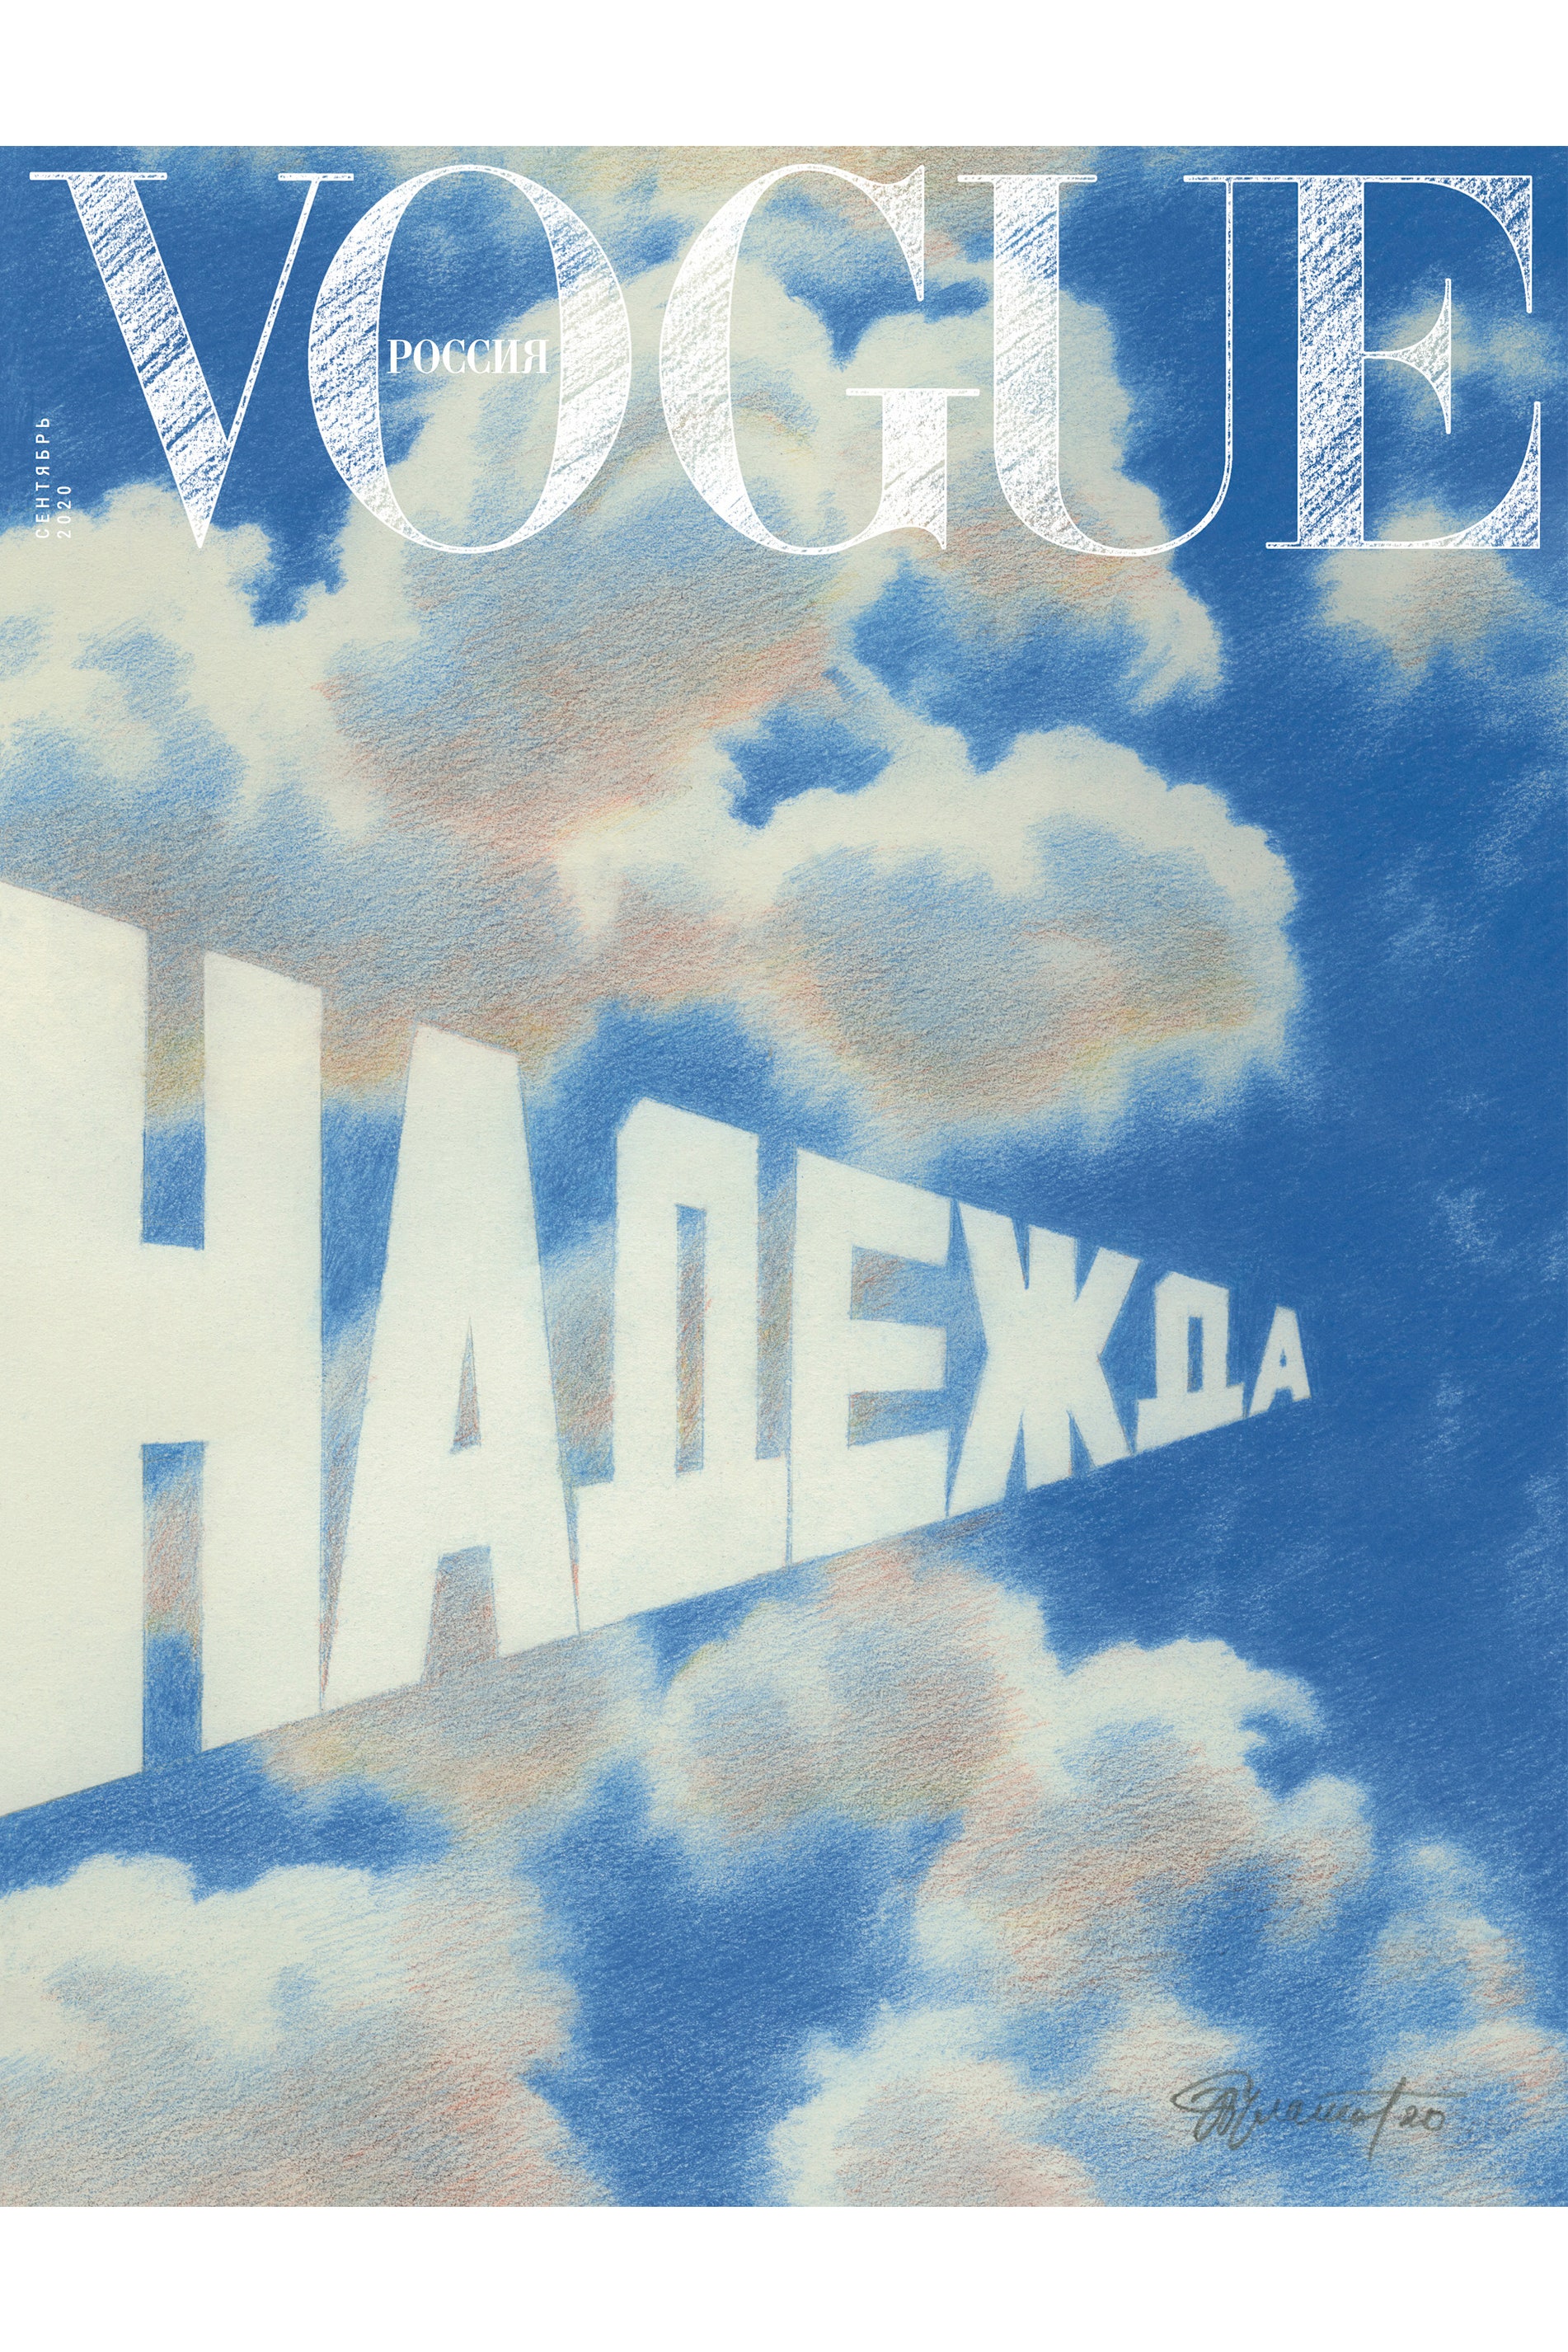 Сентябрьский номер Vogue Россия выйдет с «Надеждой» Эрика Булатова на обложке